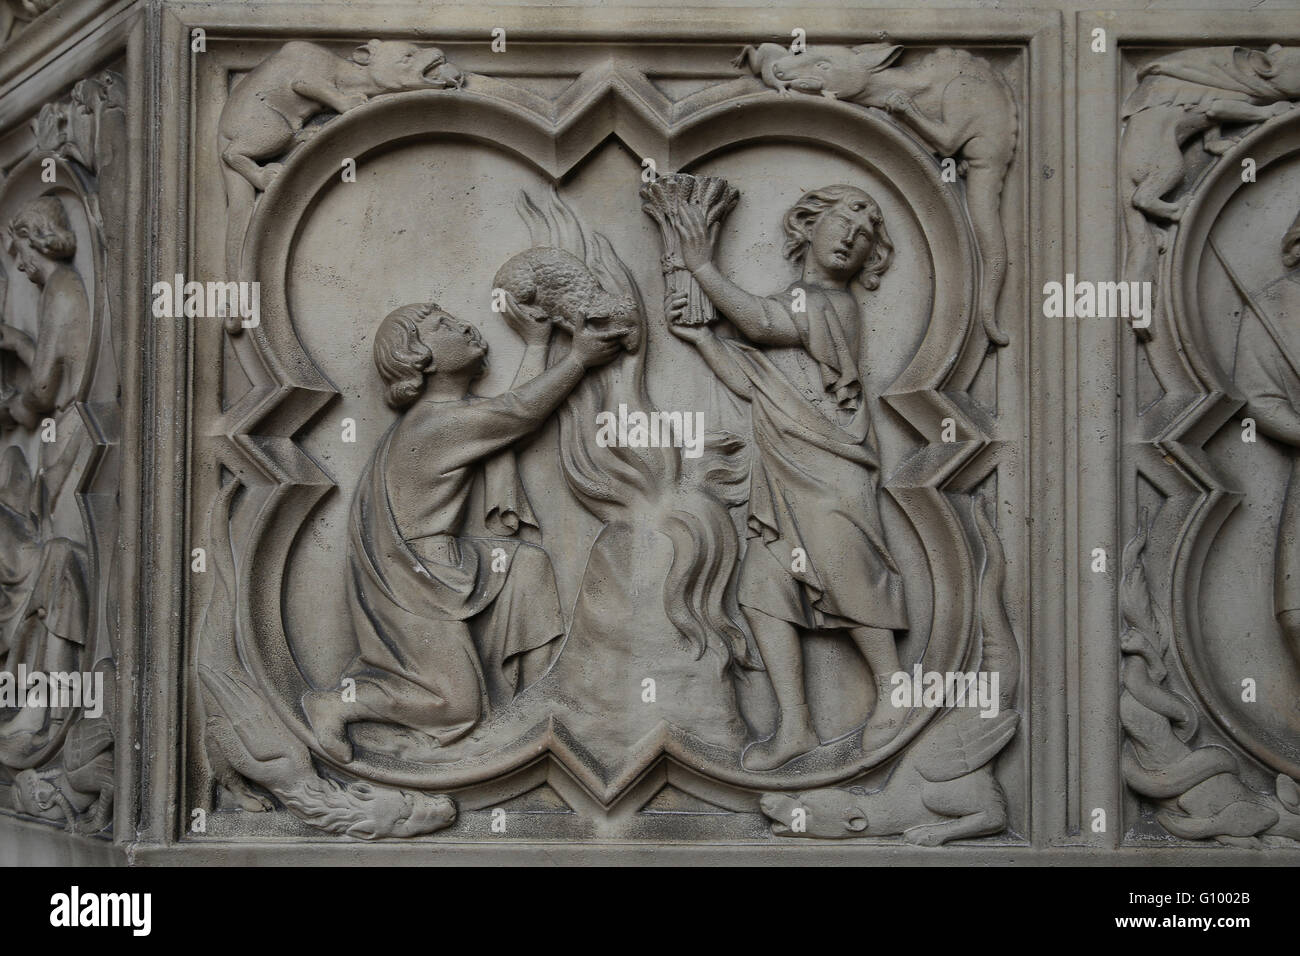 Die Opfer des Abel und Kain. Relief. 13. c. Basis des Portals der oberen Kapelle. Sainte-Chapelle, Paris. Frankreich. Stockfoto